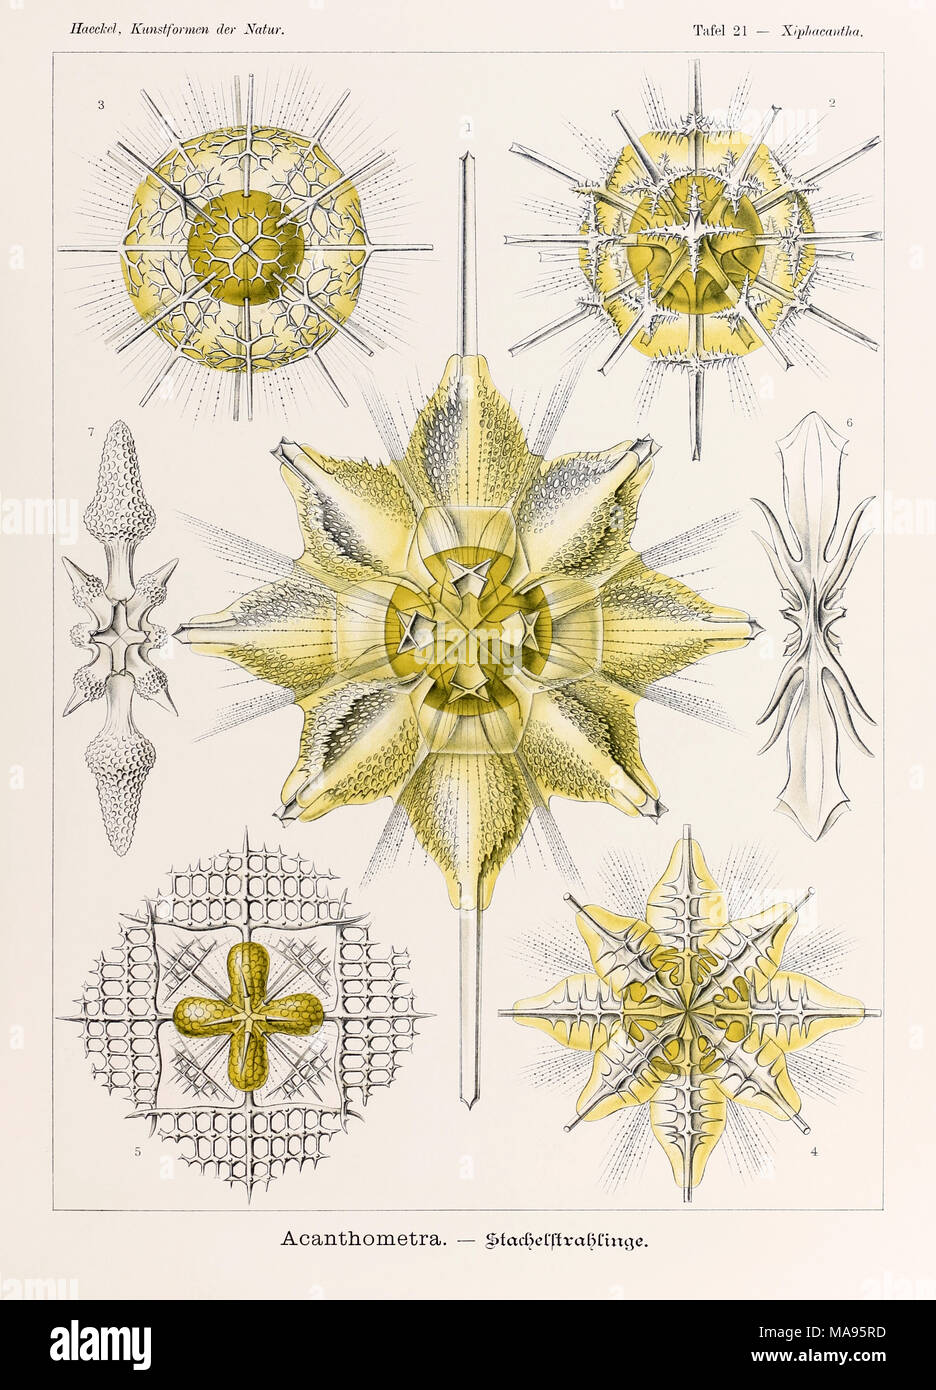 21 Xiphacantha Acantharea placa de "Kunstformen der Natur" (formas artísticas en la naturaleza), ilustrado por Ernst Haeckel (1834-1919). Ver más información a continuación. Foto de stock